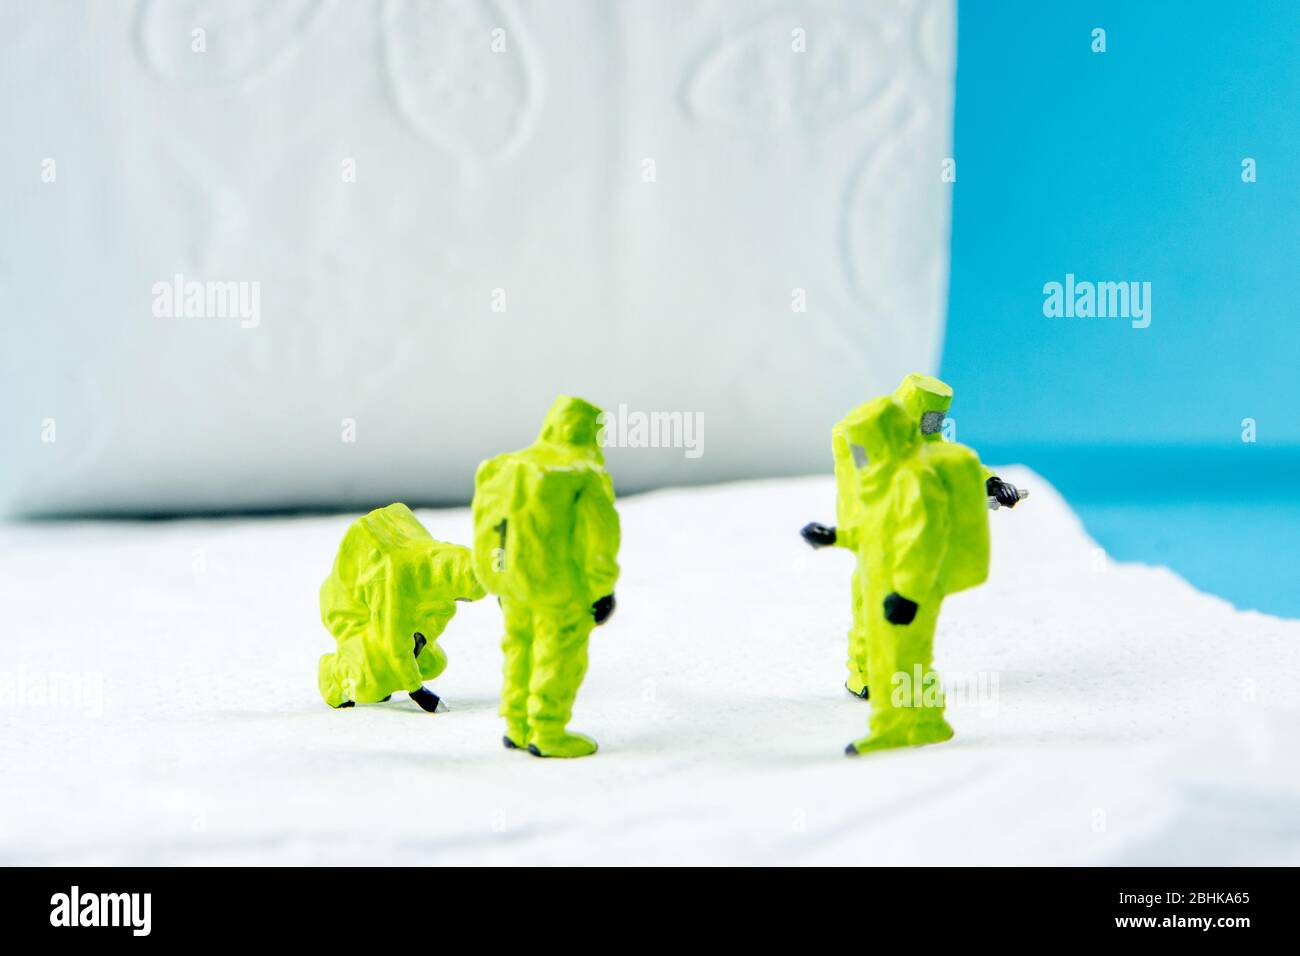 une équipe de figurines miniatures vérifiant une propreté du papier toilette, très important pour faire une desinfection de la toilette et d'autres endroits peut-être sale Banque D'Images